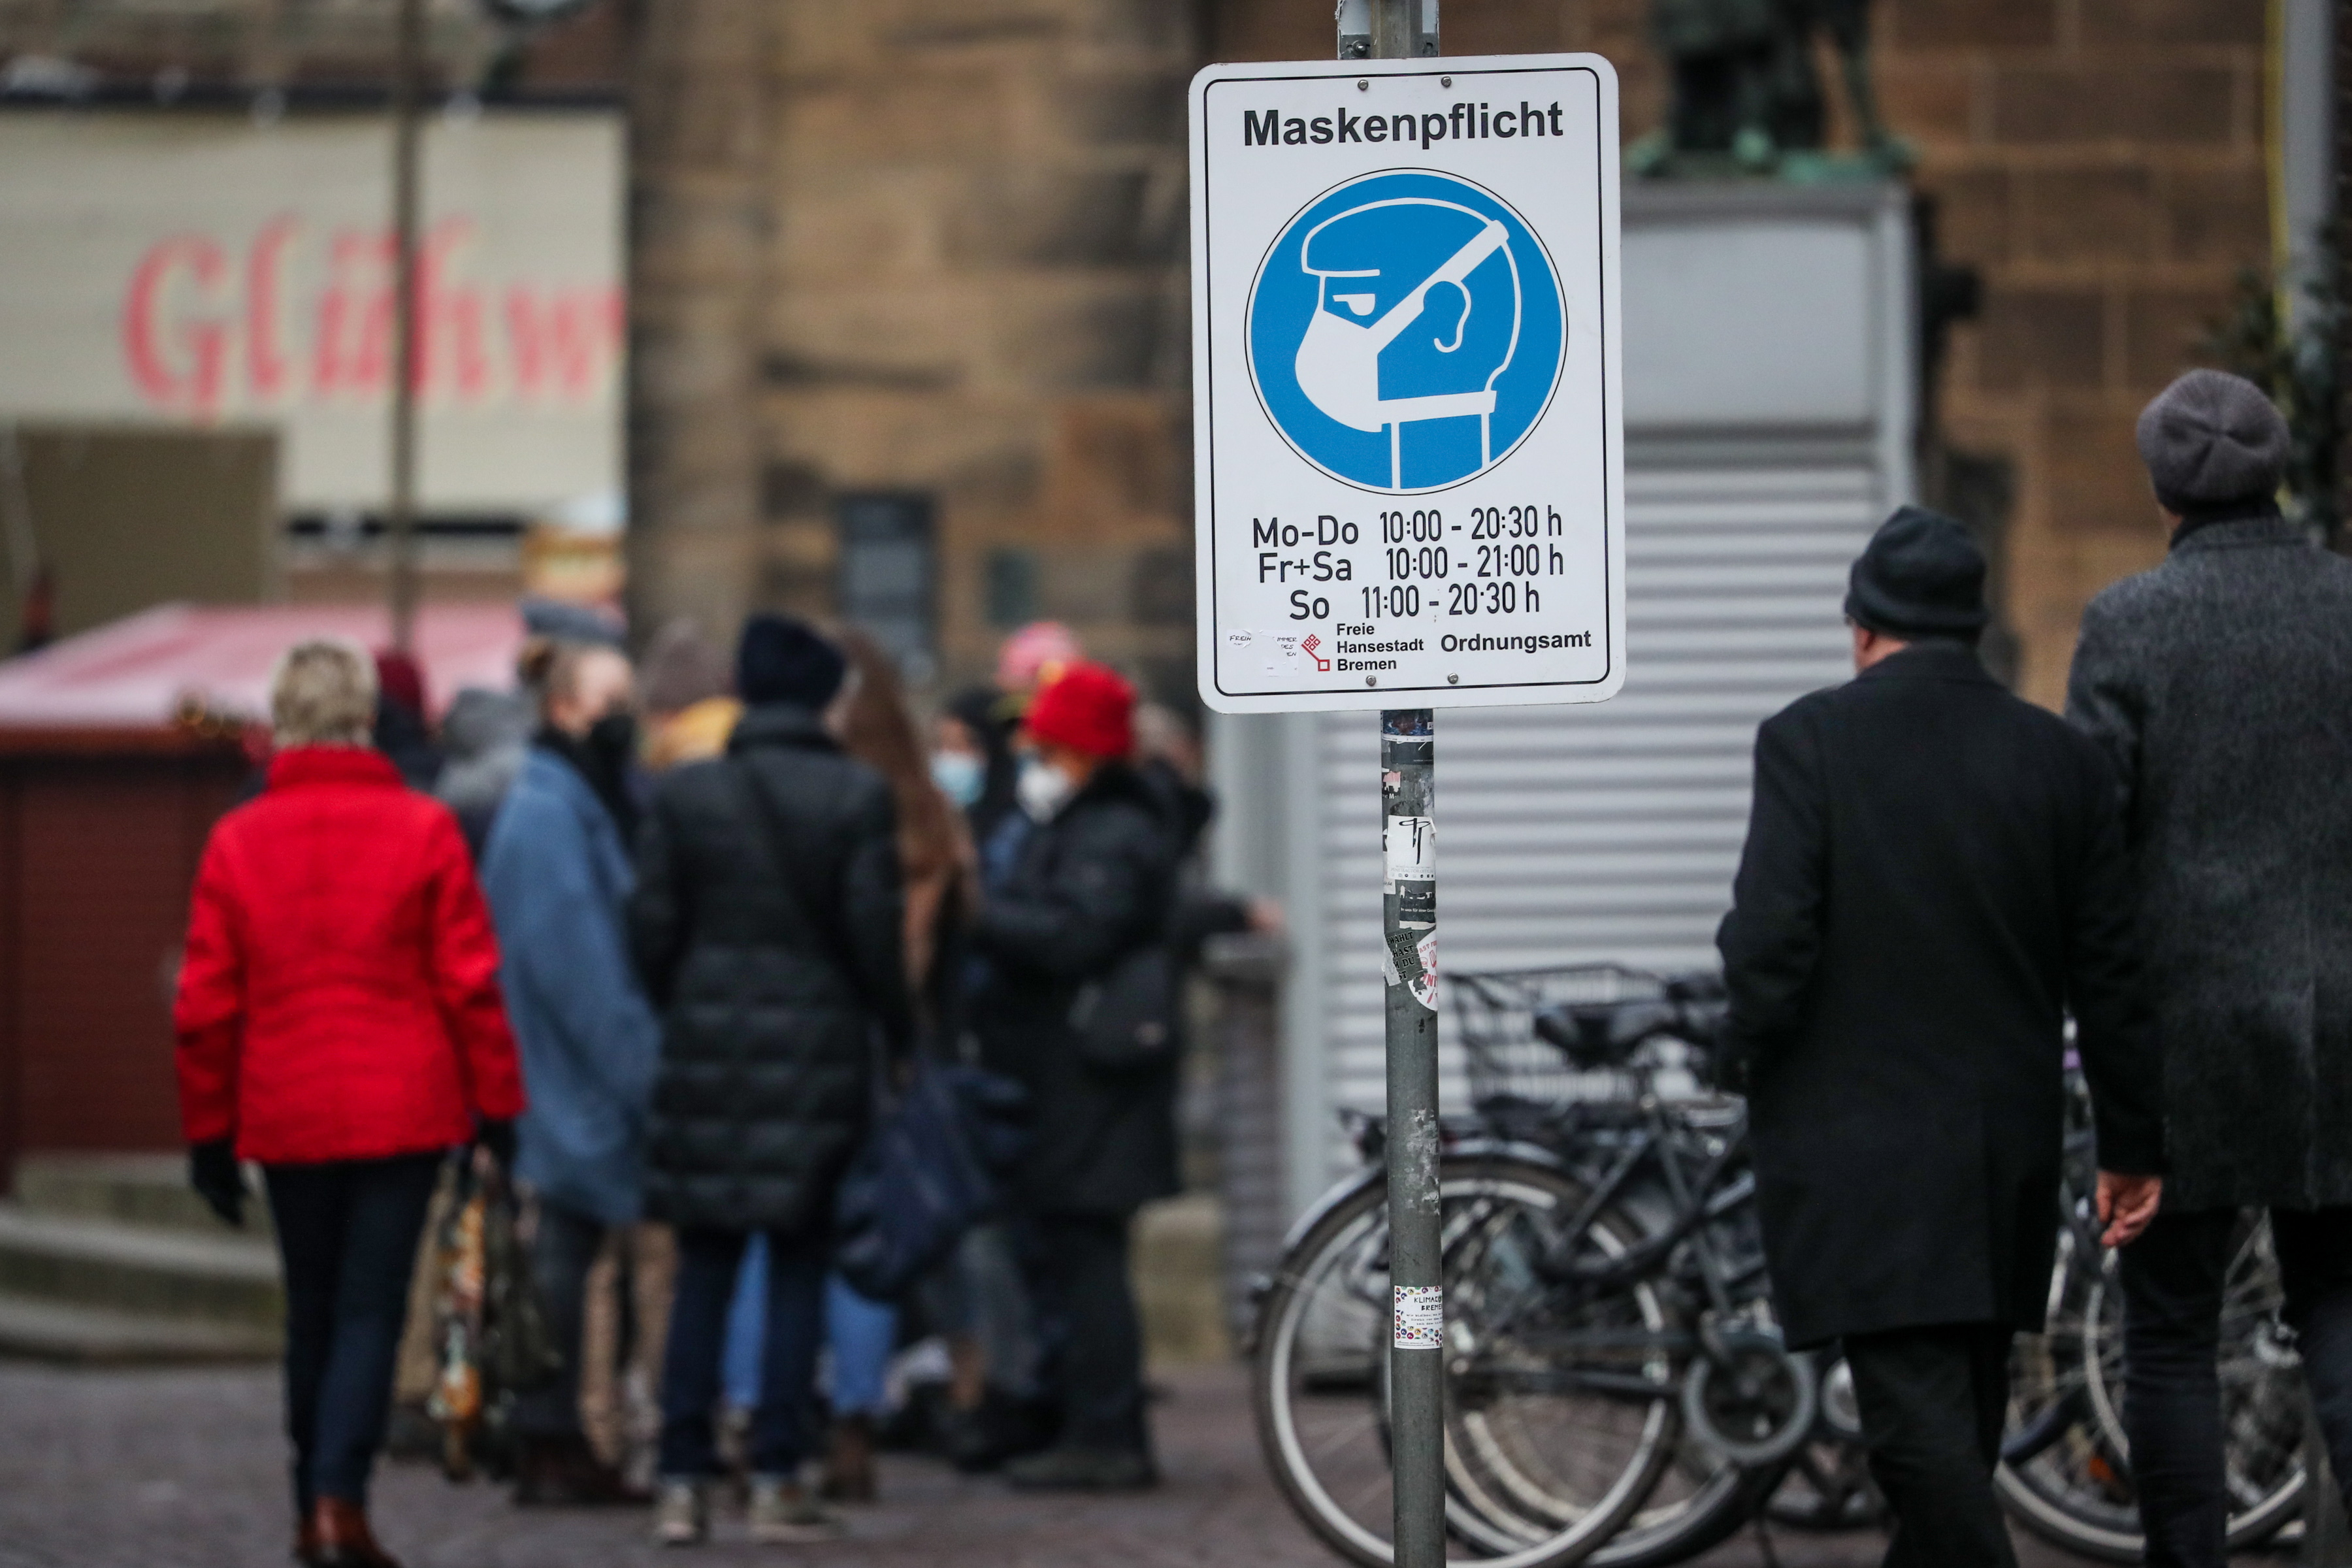 Alemania debatirá la vacuna obligatoria. Mientras, impone la regla 2G plus: ingreso a bares o restaurantes con QR con pauta de vacuna completa, que sume dosis de refuerzo o un test negativo.